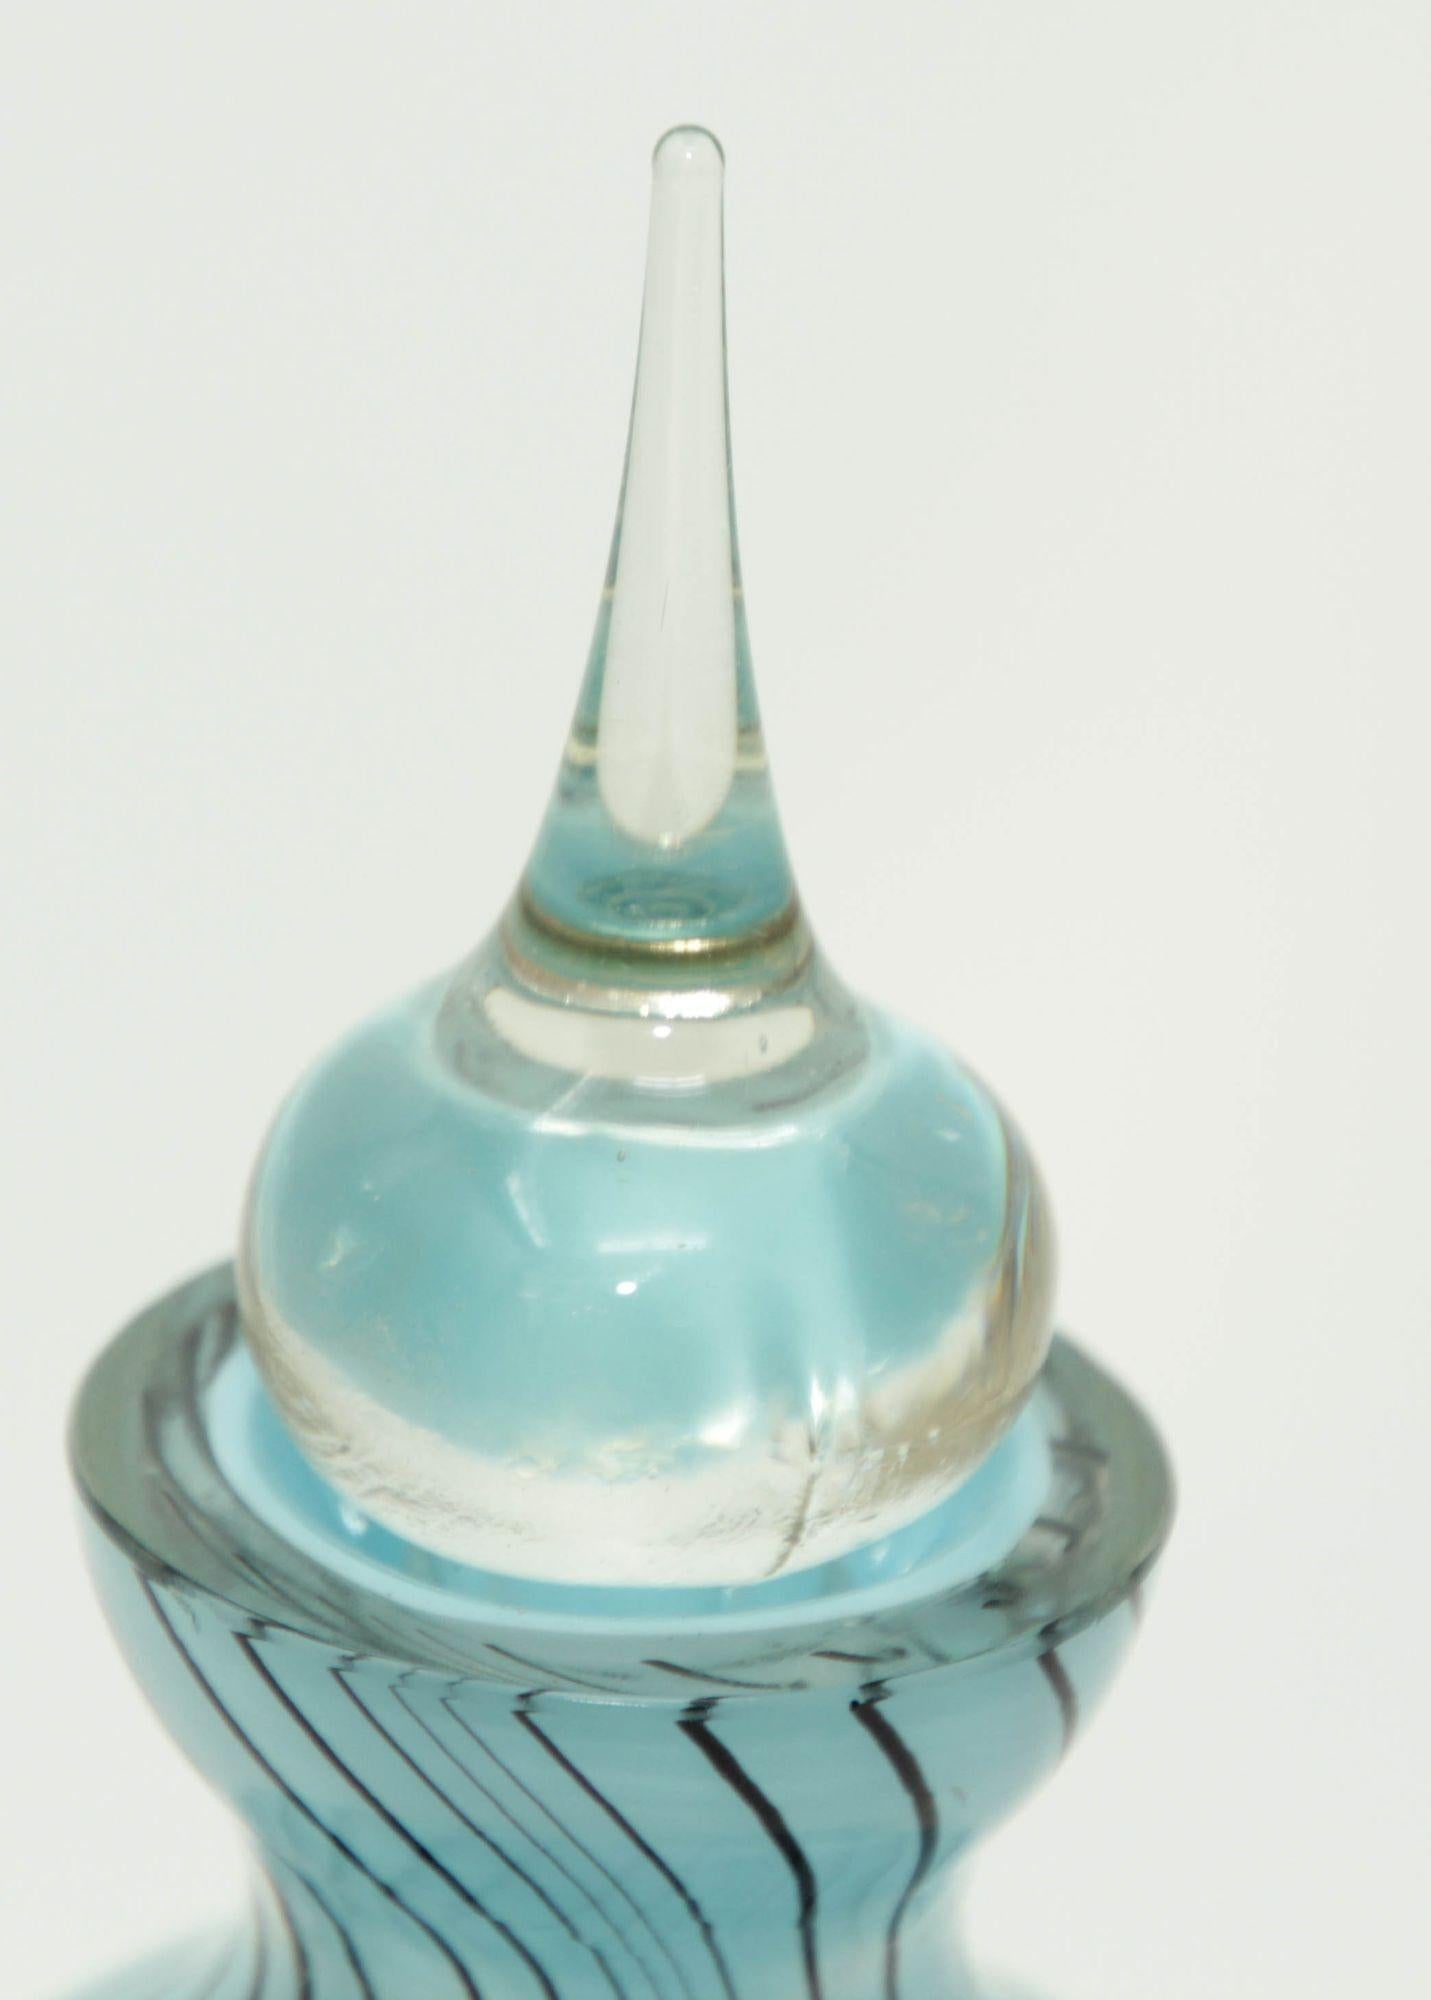 Flacon de parfum vintage en verre d'art de Murano avec bouchon d'origine en bleu ciel clair avec des rayures noires et un bouchon transparent.
Verre soufflé à la bouche en bleu et noir.
Le flacon de parfum est muni de son long bouchon d'origine avec